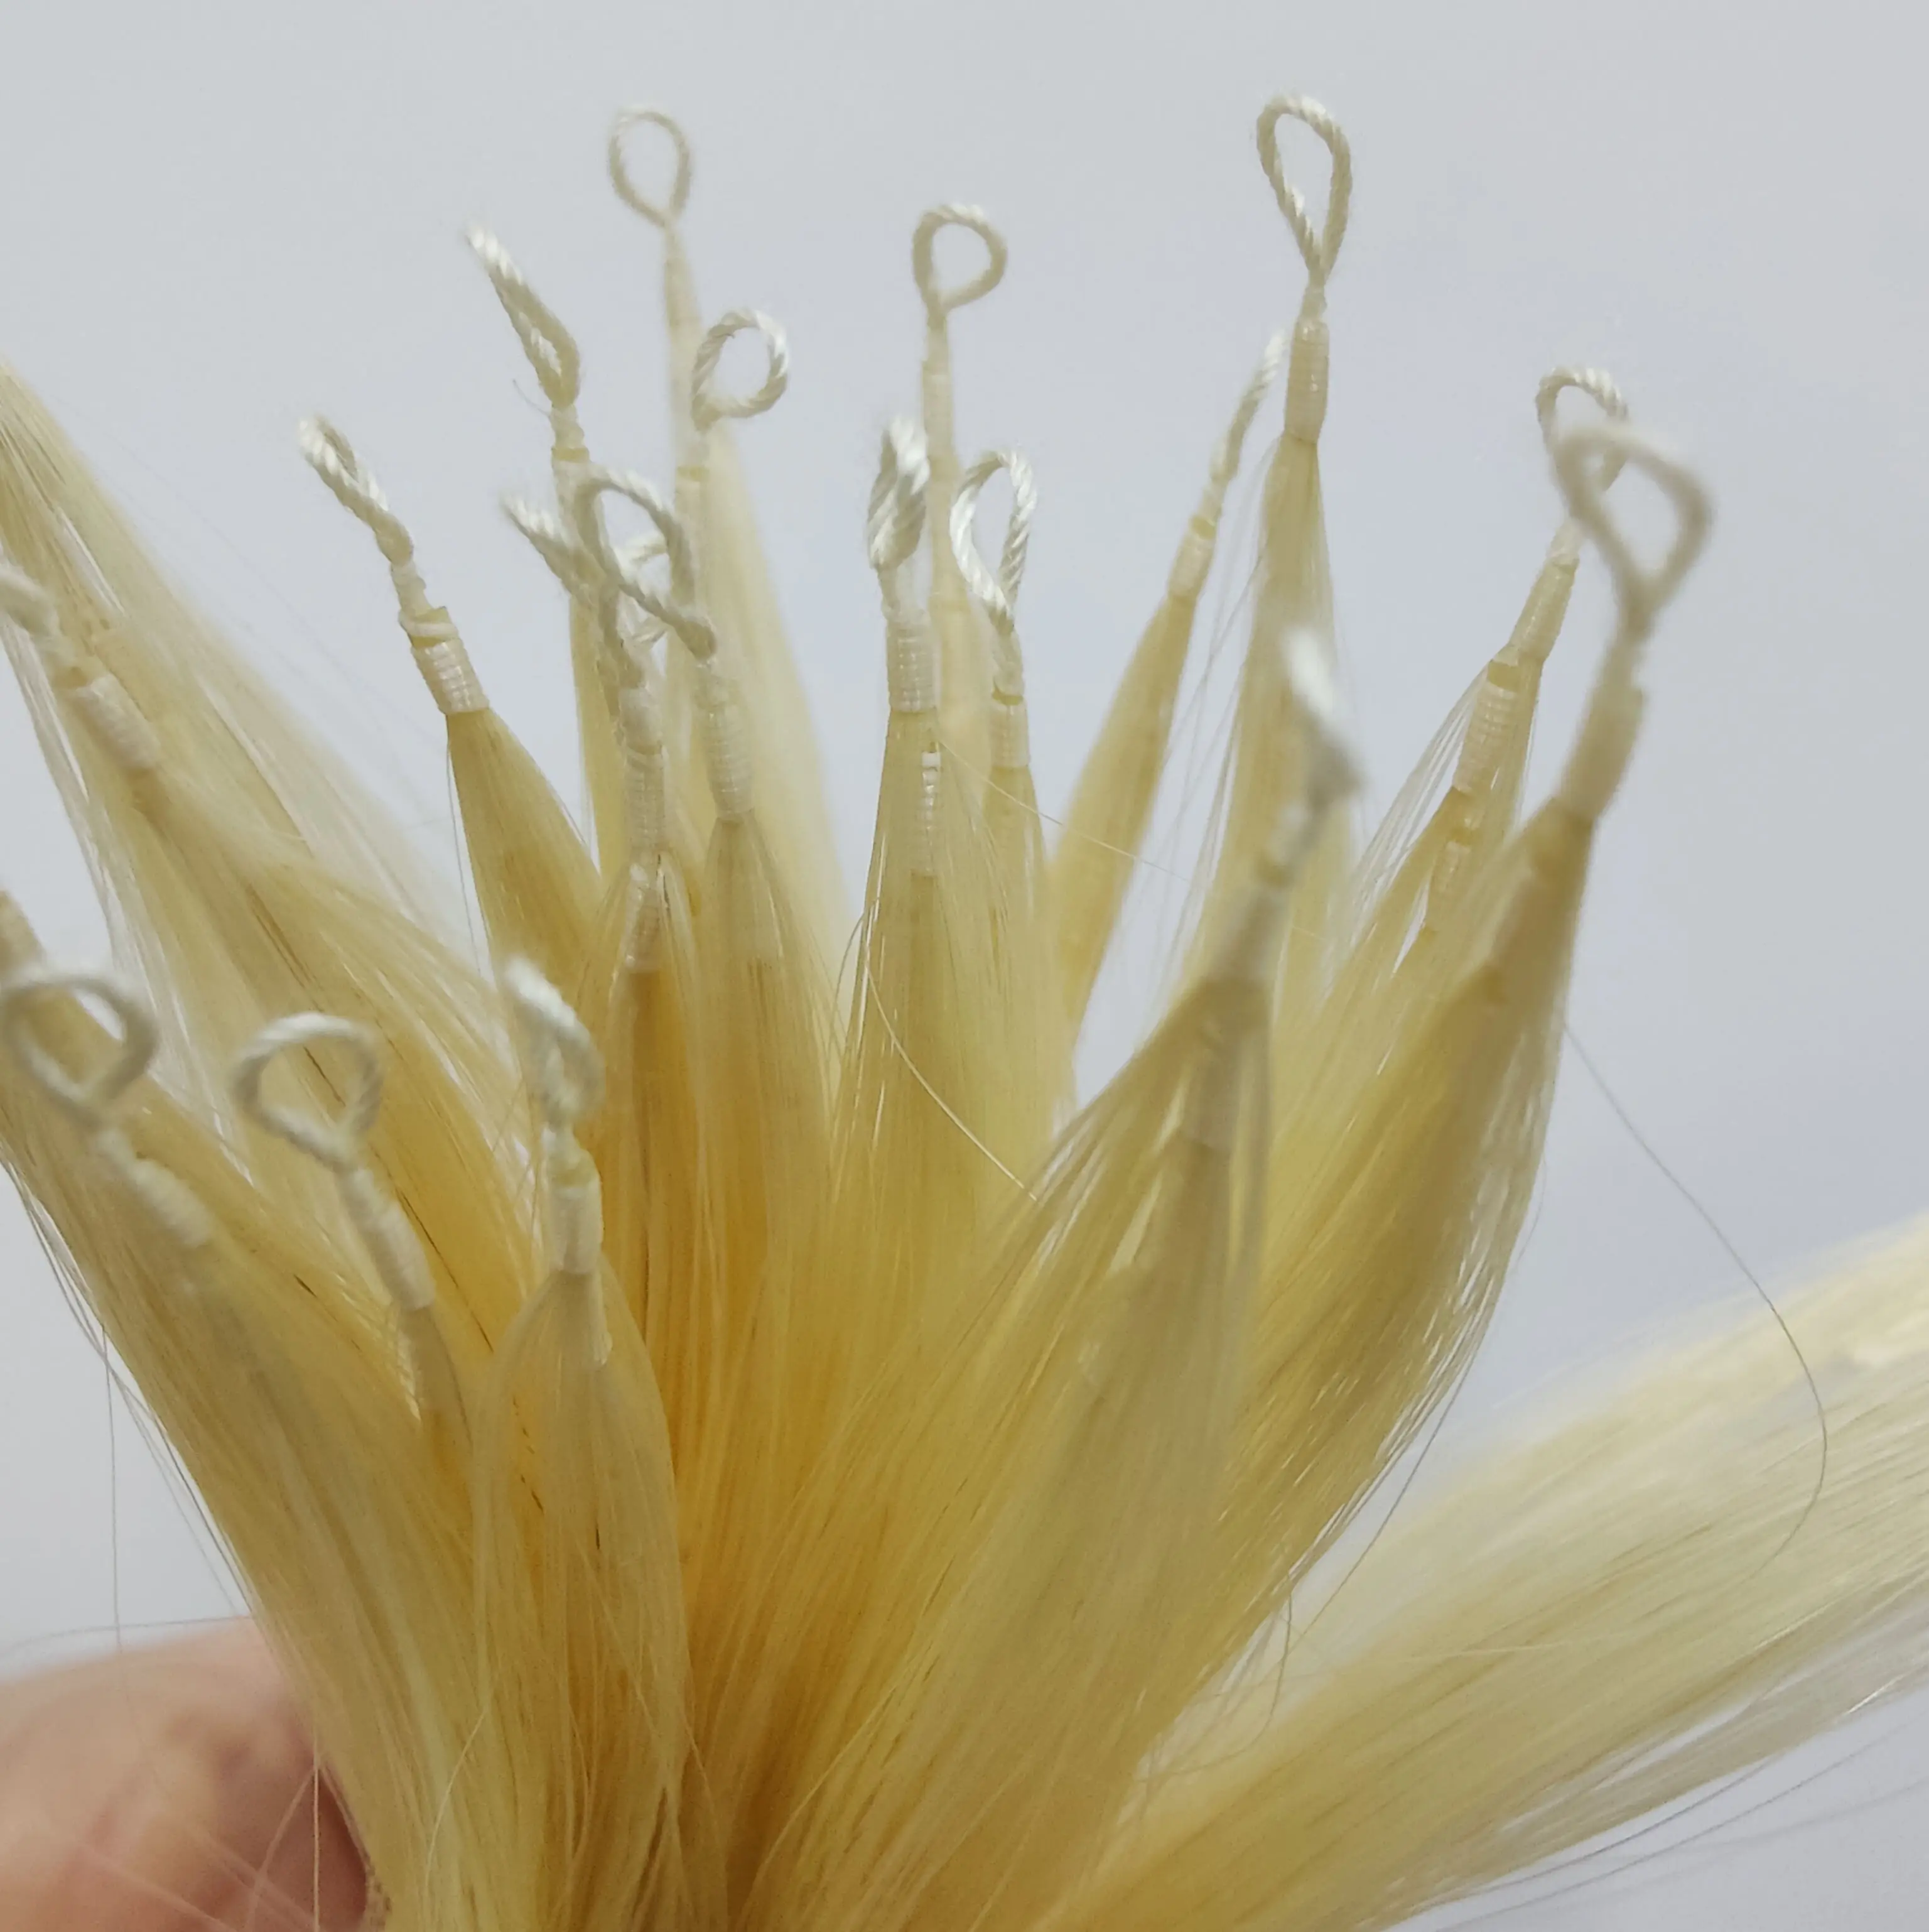 प्राकृतिक वर्जिन रेमी बाल अदृश्य 613 सुनहरे हाथ से हुकिंग पंख वाले बाल एक्सटेंशन 100% मानव बाल